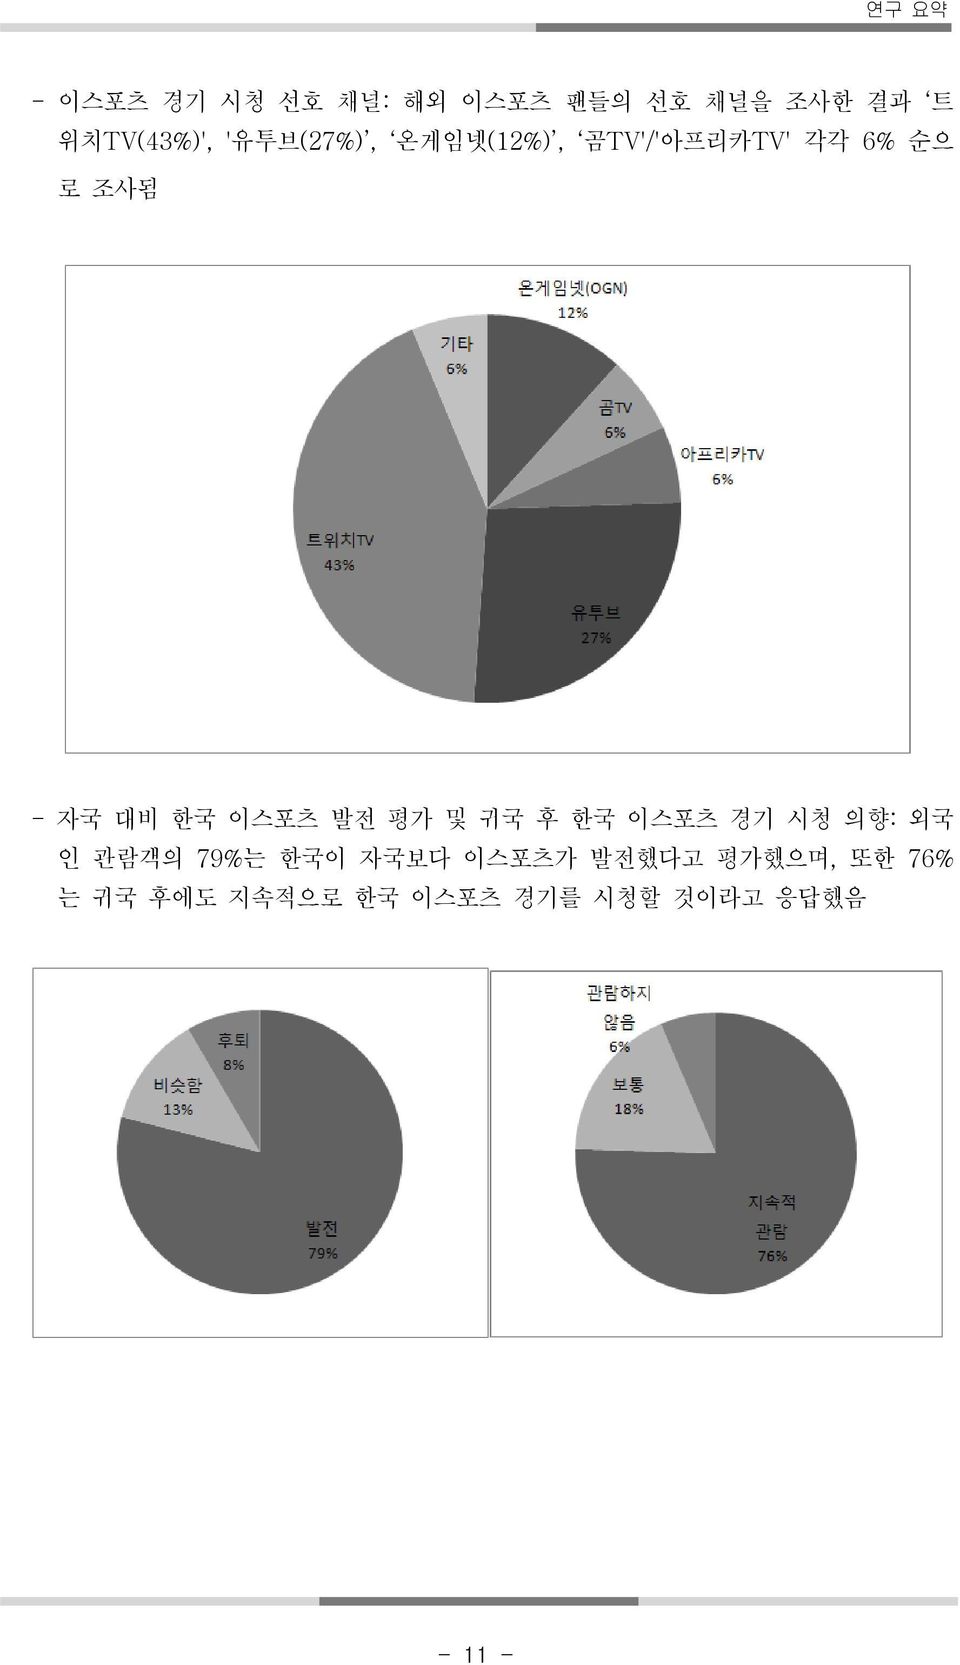 이스포츠 발전 평가 및 귀국 후 한국 이스포츠 경기 시청 의향: 외국 인 관람객의 79%는 한국이 자국보다 이스포츠가